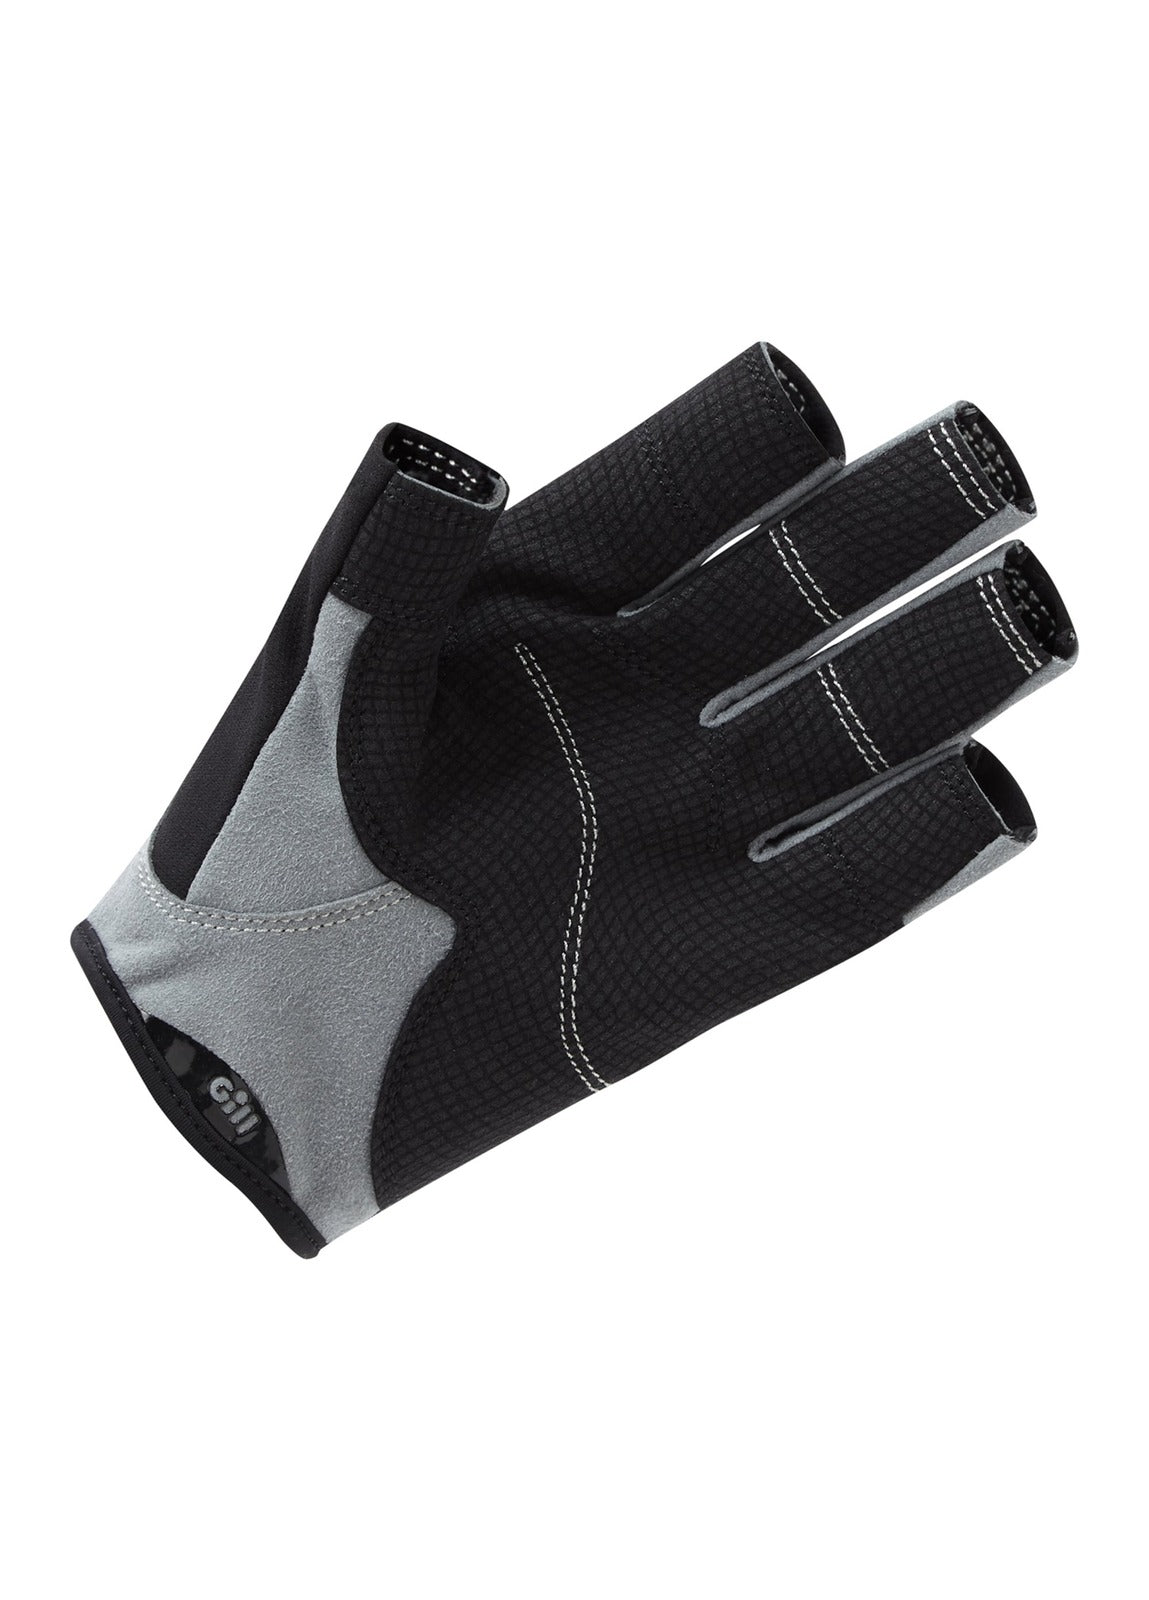 Gill Deckhand Gloves Short Finger - Black